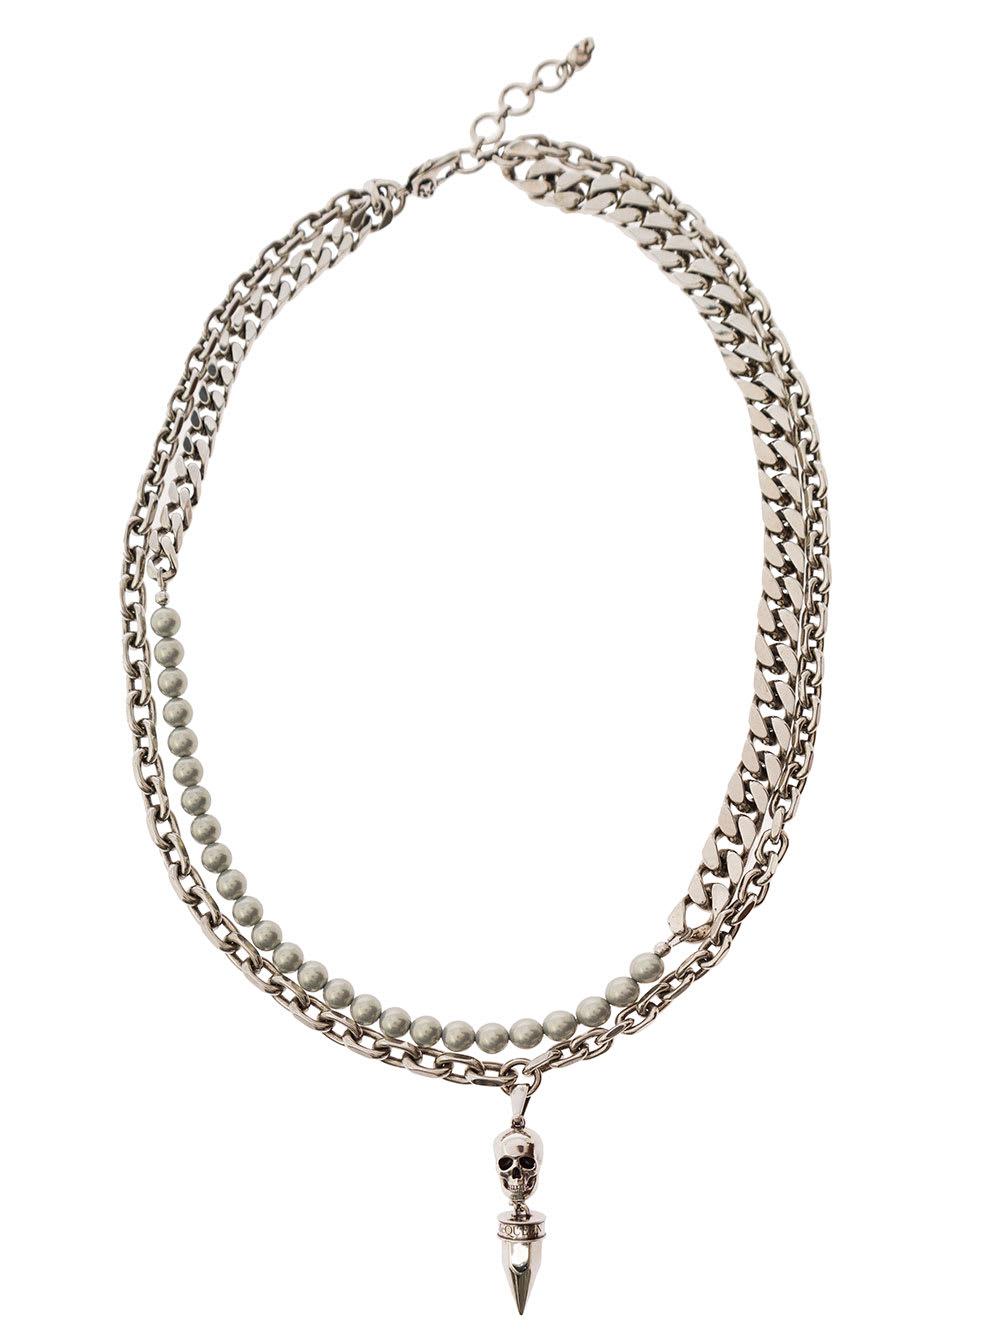 Alexander Mcqueen Skull & Chain Necklace